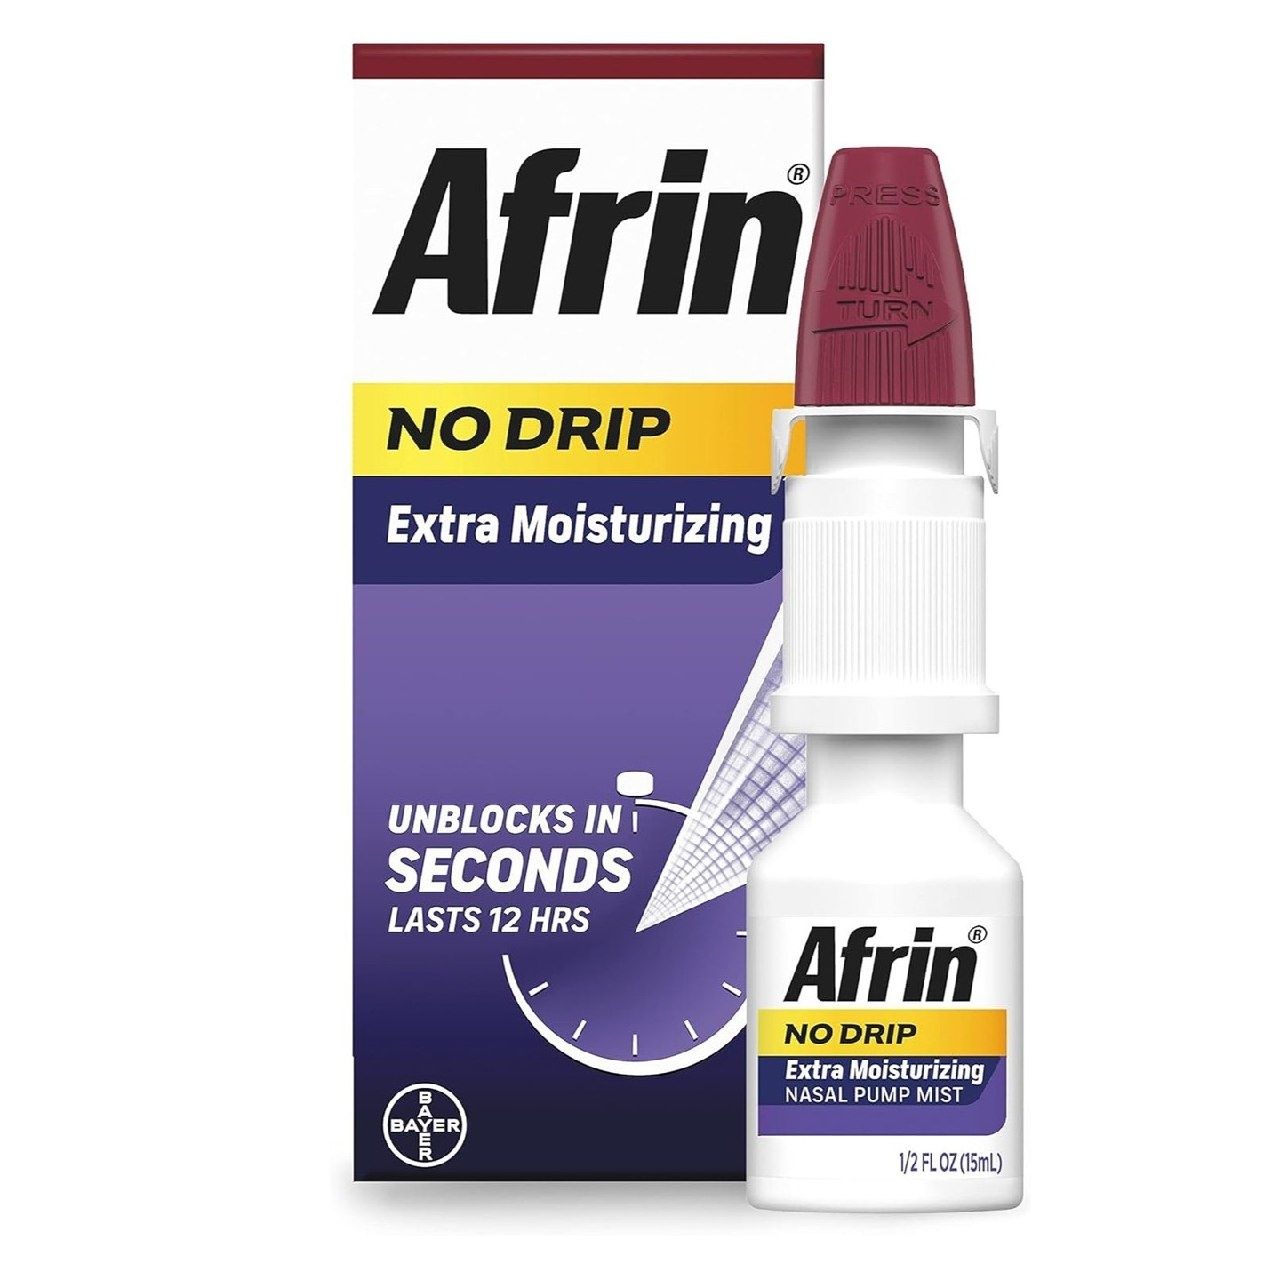 Afrin No Drip Extra Moisturizing, 12-часовой спрей для снятия заложенн